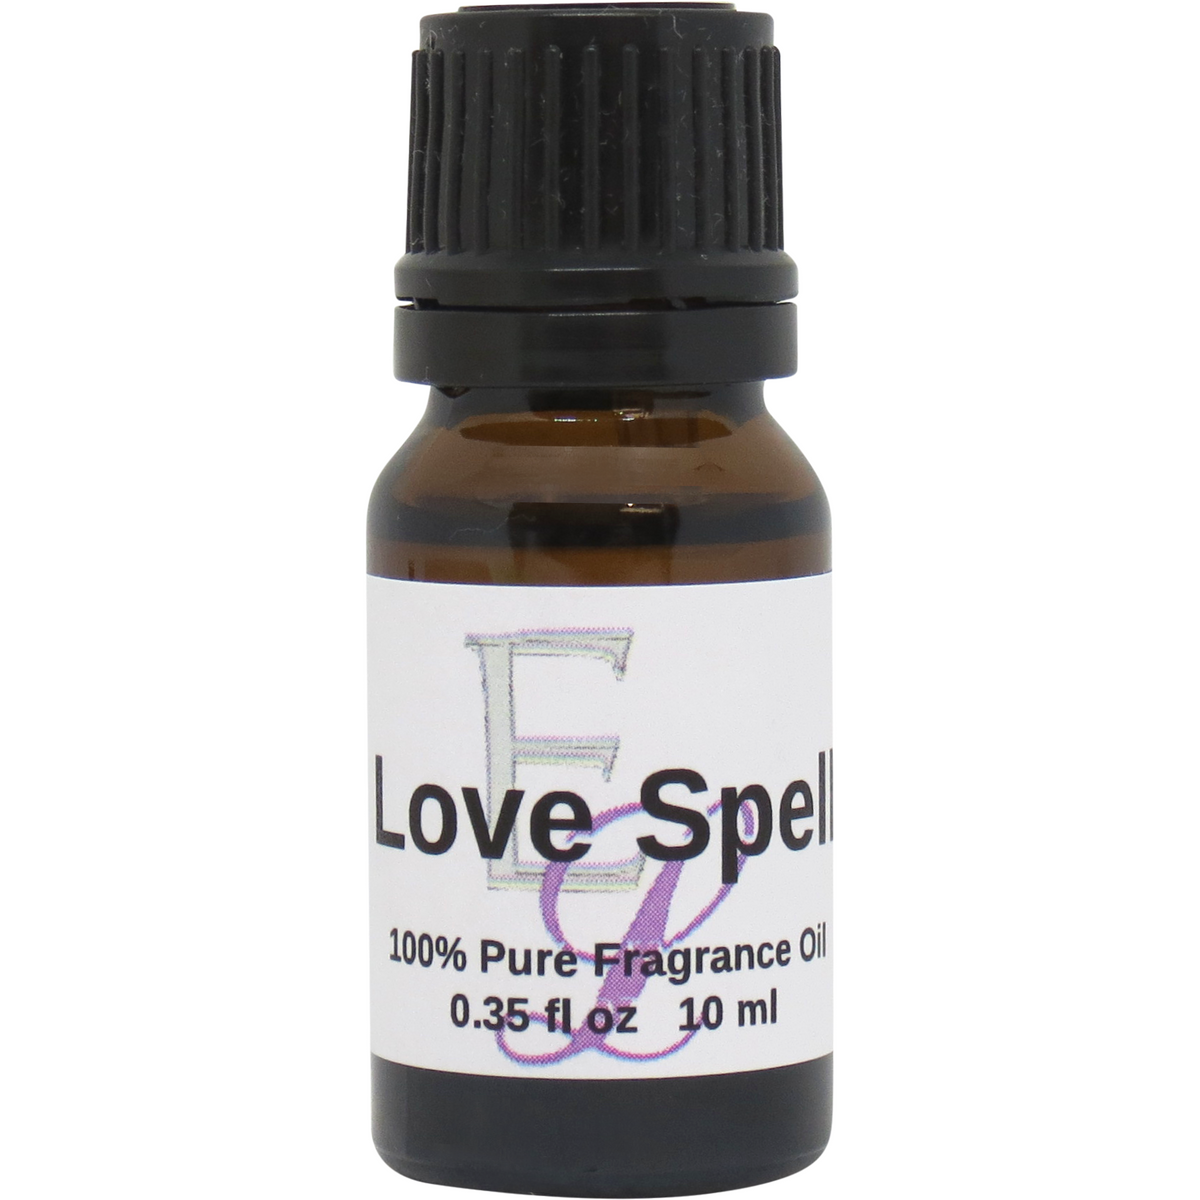 Love Spell Fragrance Oil, 10 ml Premium, Long Lasting Diffuser